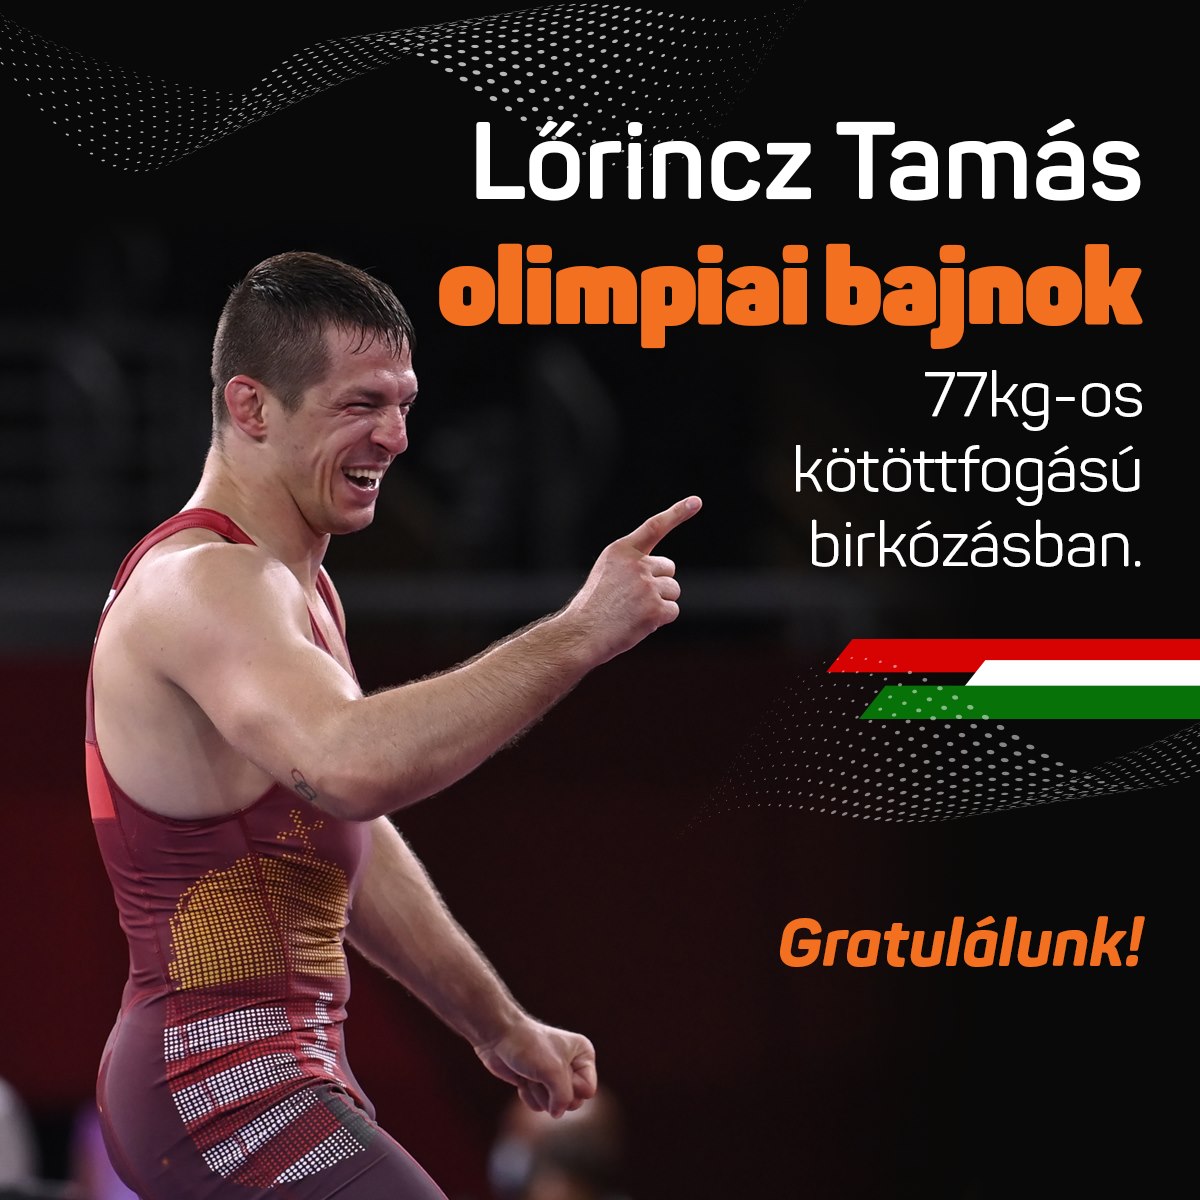 Lőrincz Tamás olimpiai bajnok 77kg-os kötöttfogású birkózásban. Gratulálunk! Hajrá, Magyarország!